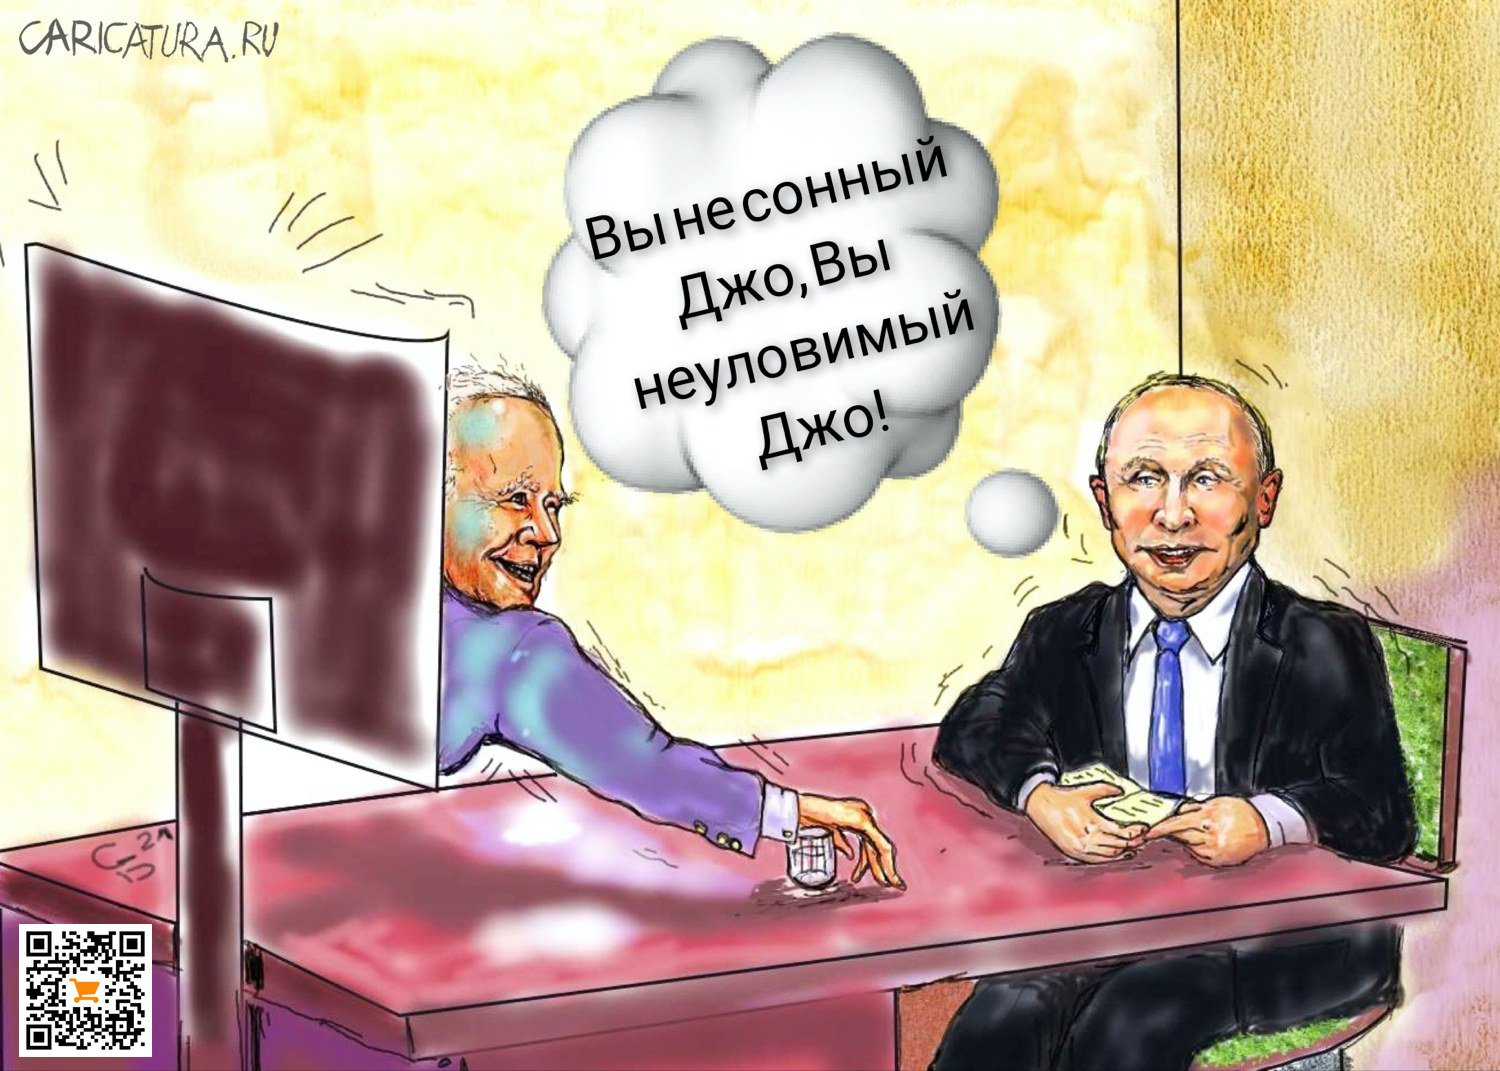 Карикатура "Переговоры", Сергей Боровиков